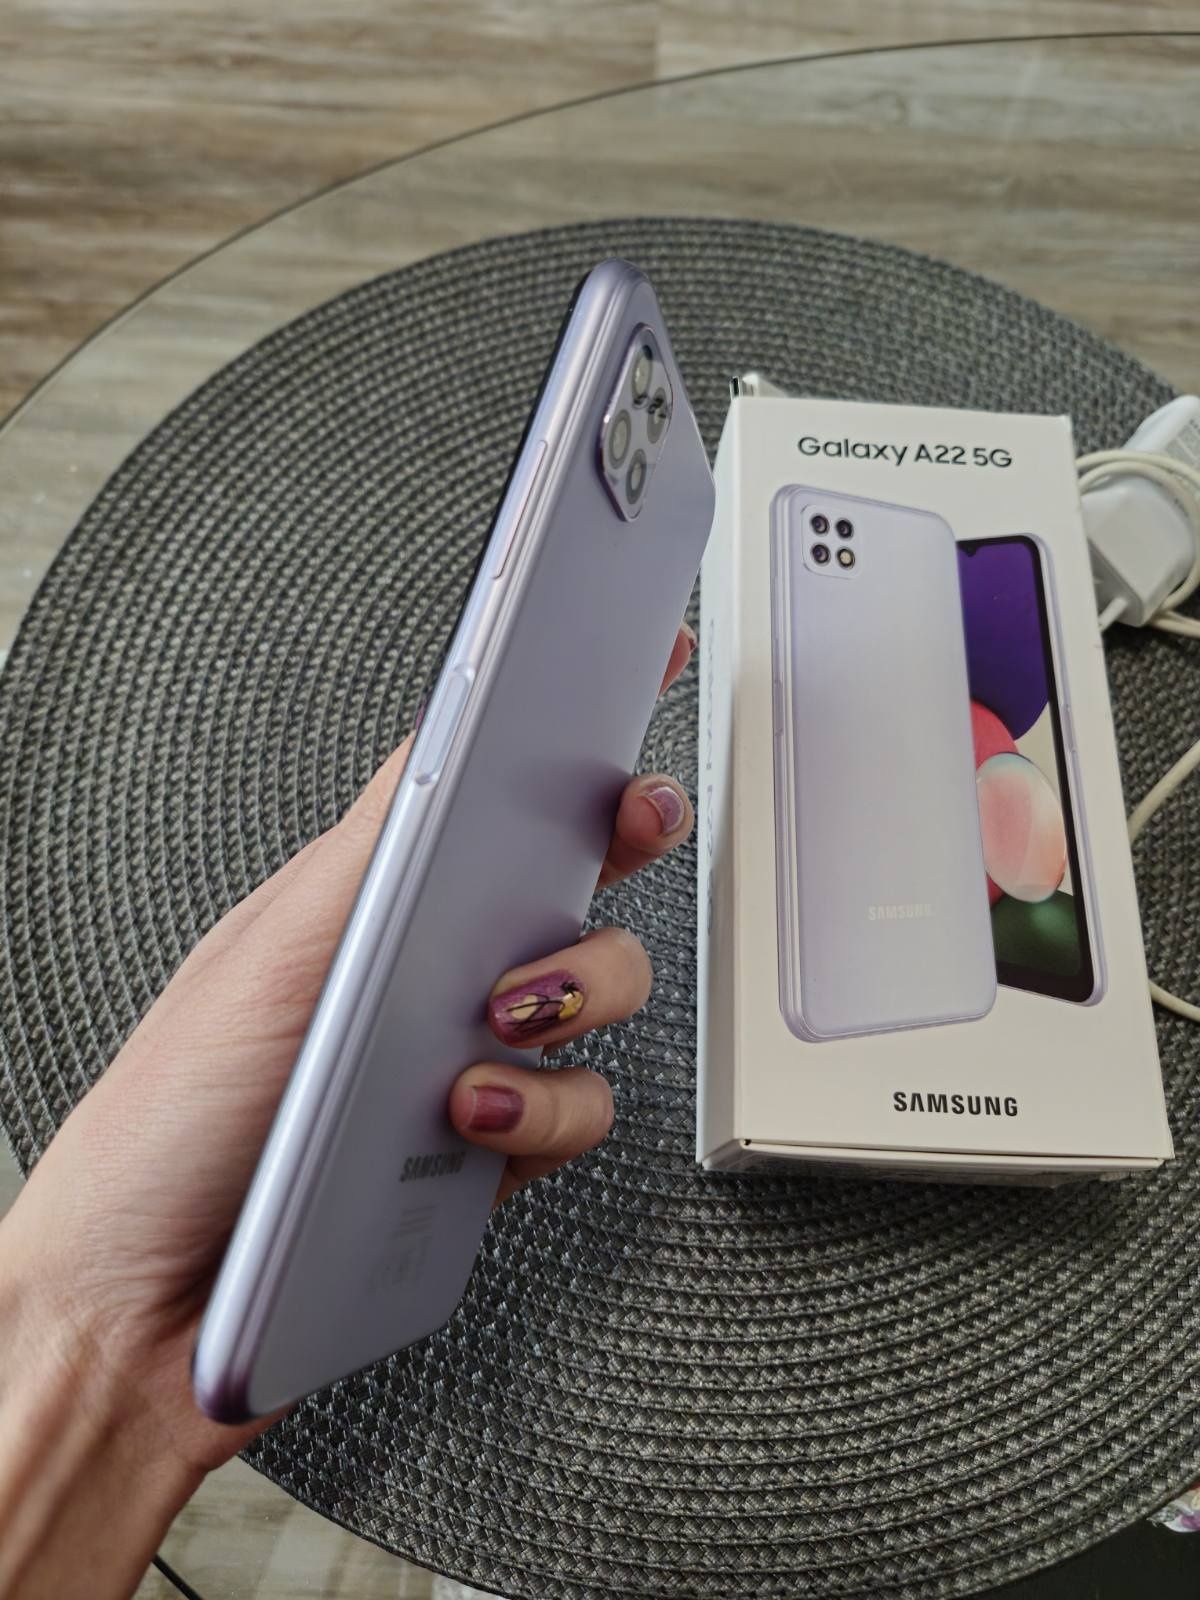 Samsung Galaxy a22 5g